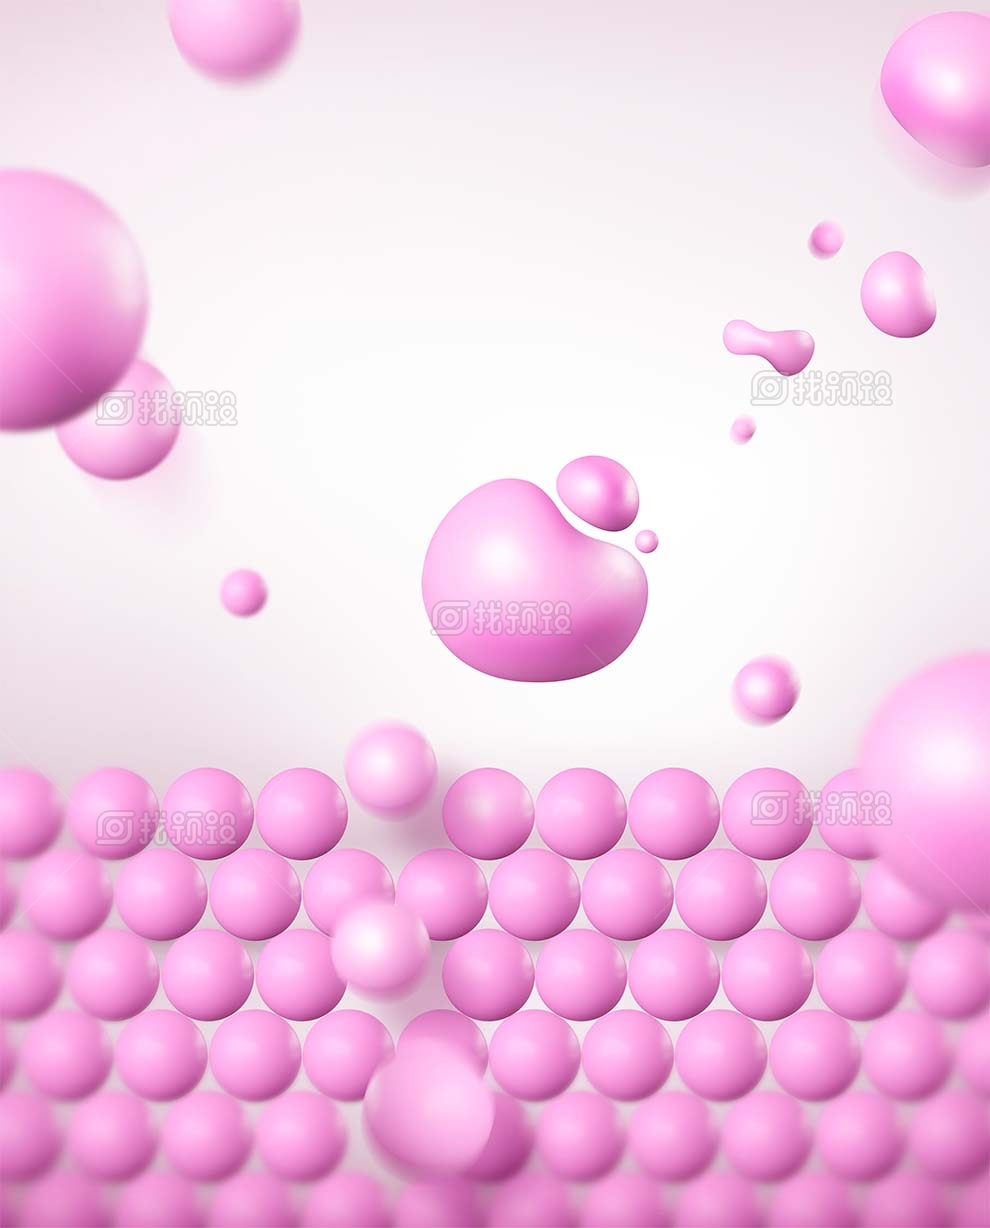 找预设网紫色分子细胞水滴水珠psd素材下载2023年3月28日 1673880887 d8a8d30a29b747b3fc2b75c0ee2623a5